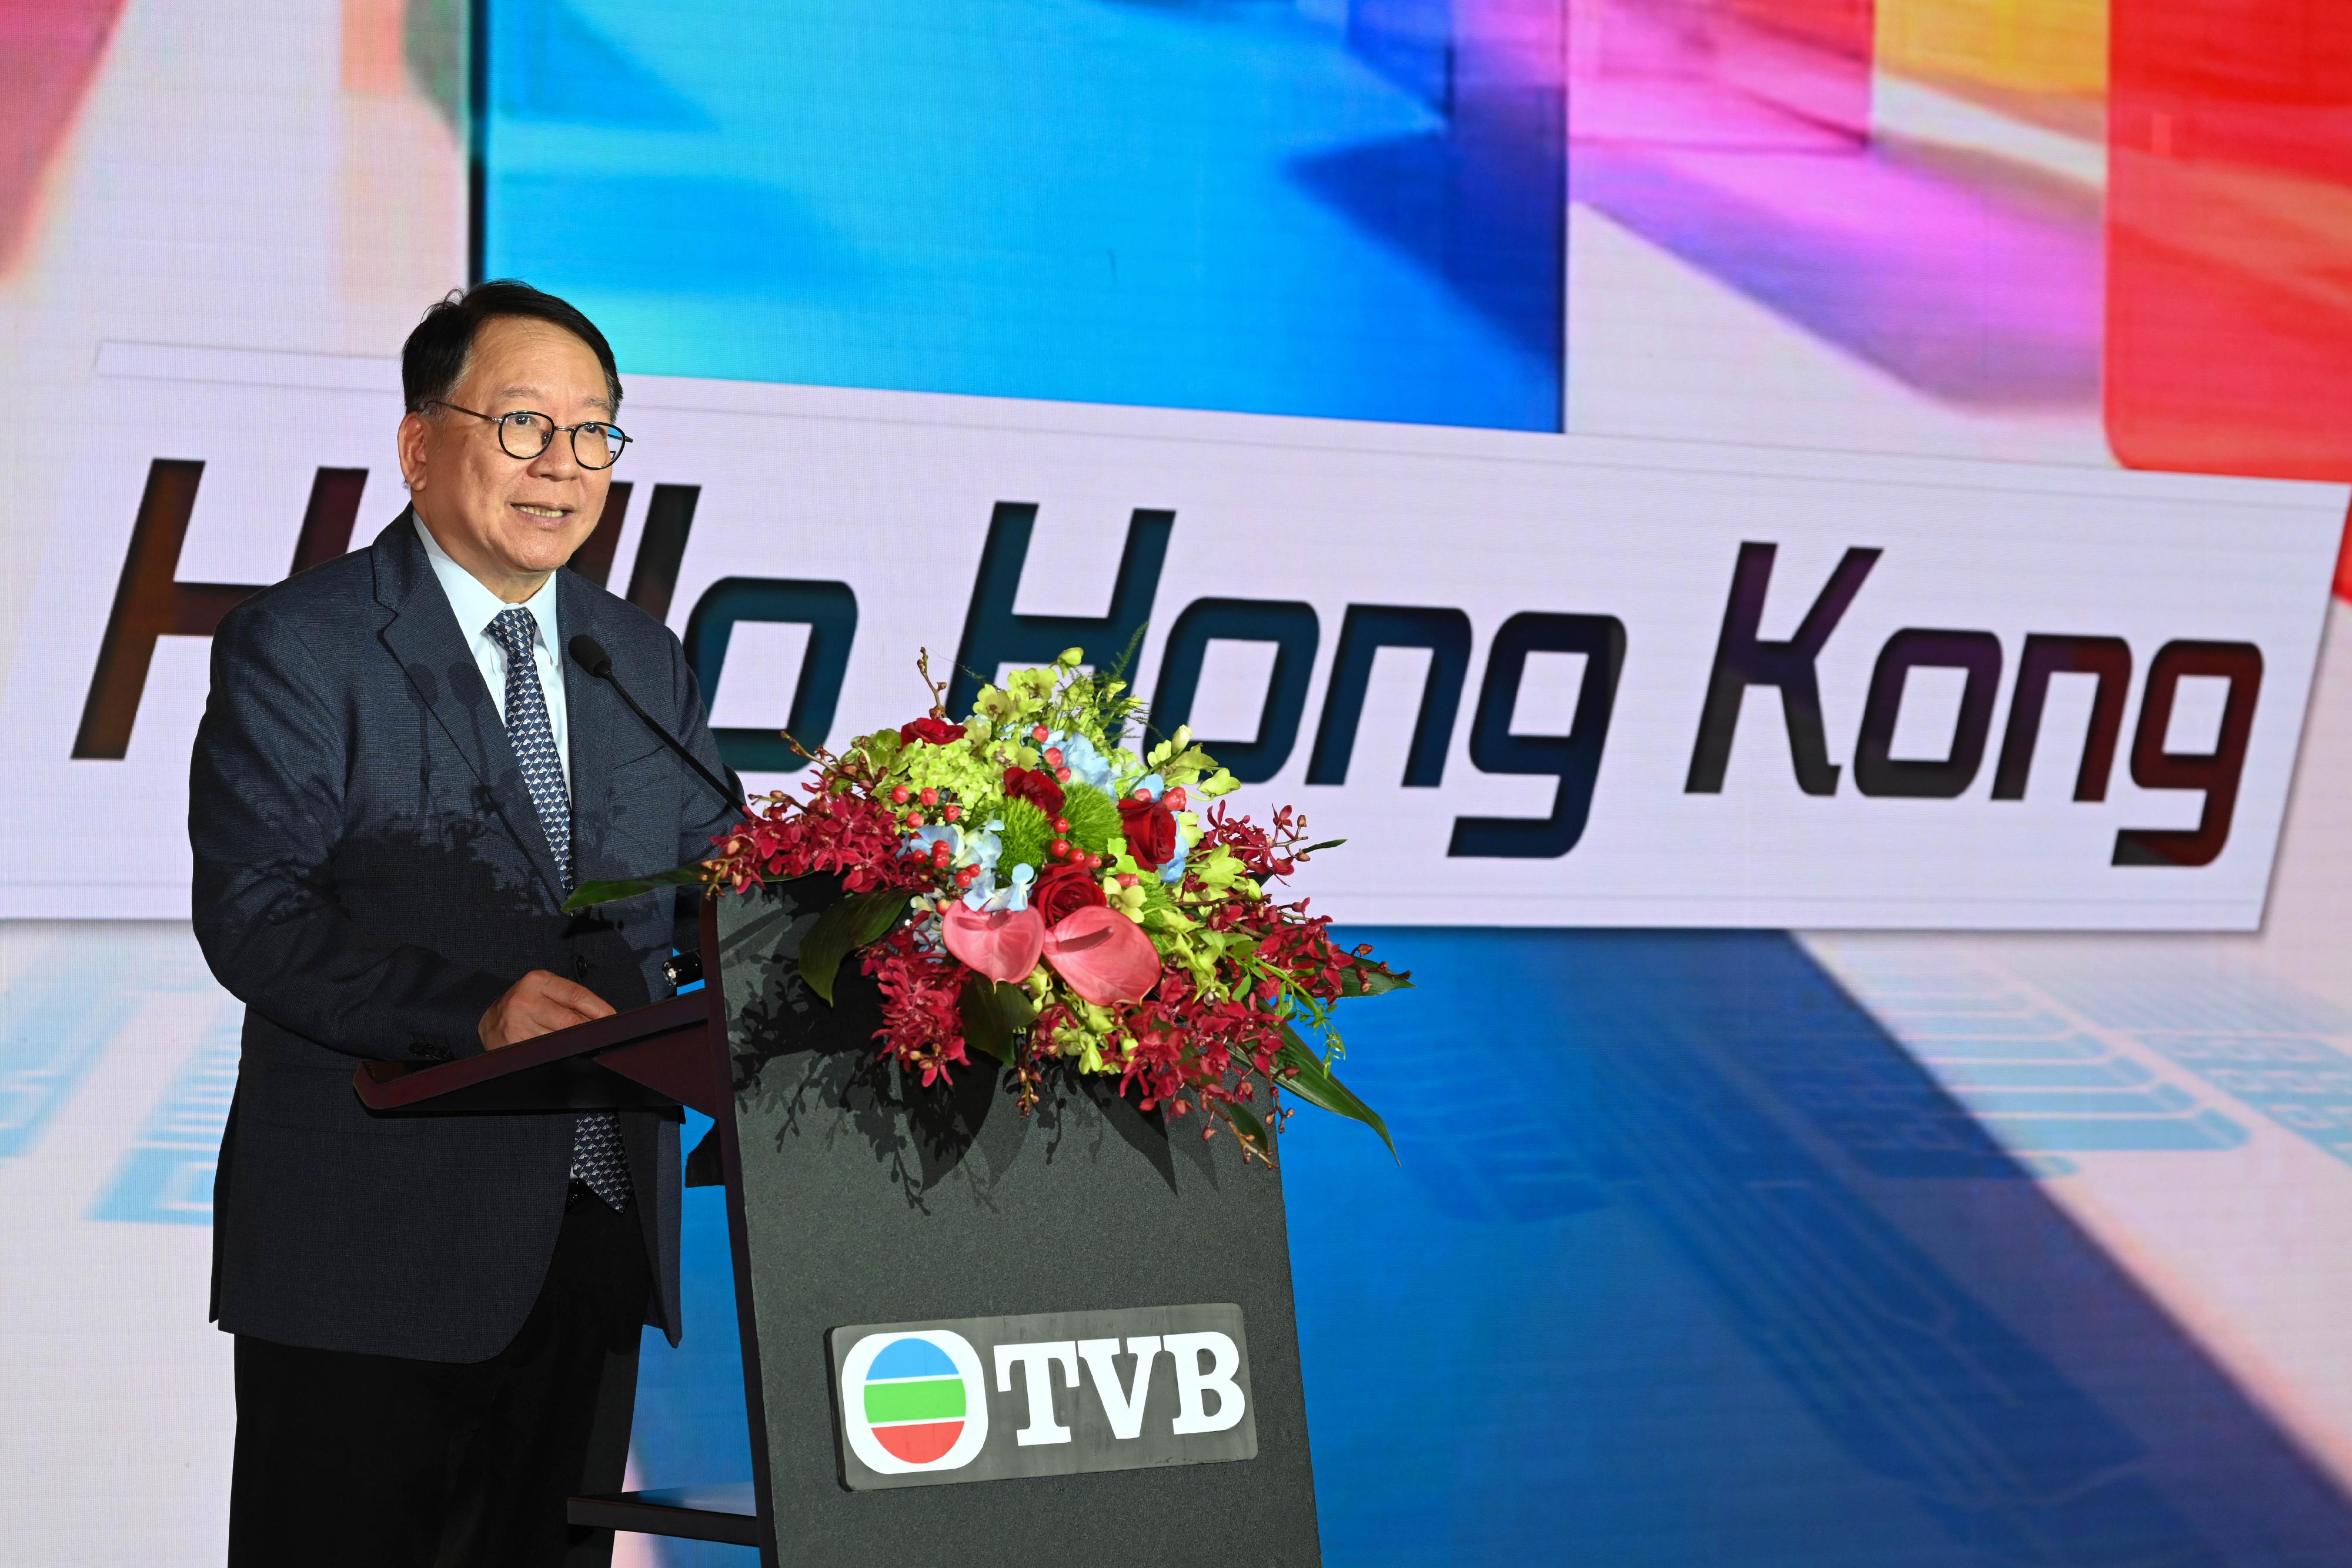 政务司司长陈国基今日（六月二十五日）到访上海。图示陈国基在电视广播有限公司举办的「Hello Hong Kong」活动上致辞。